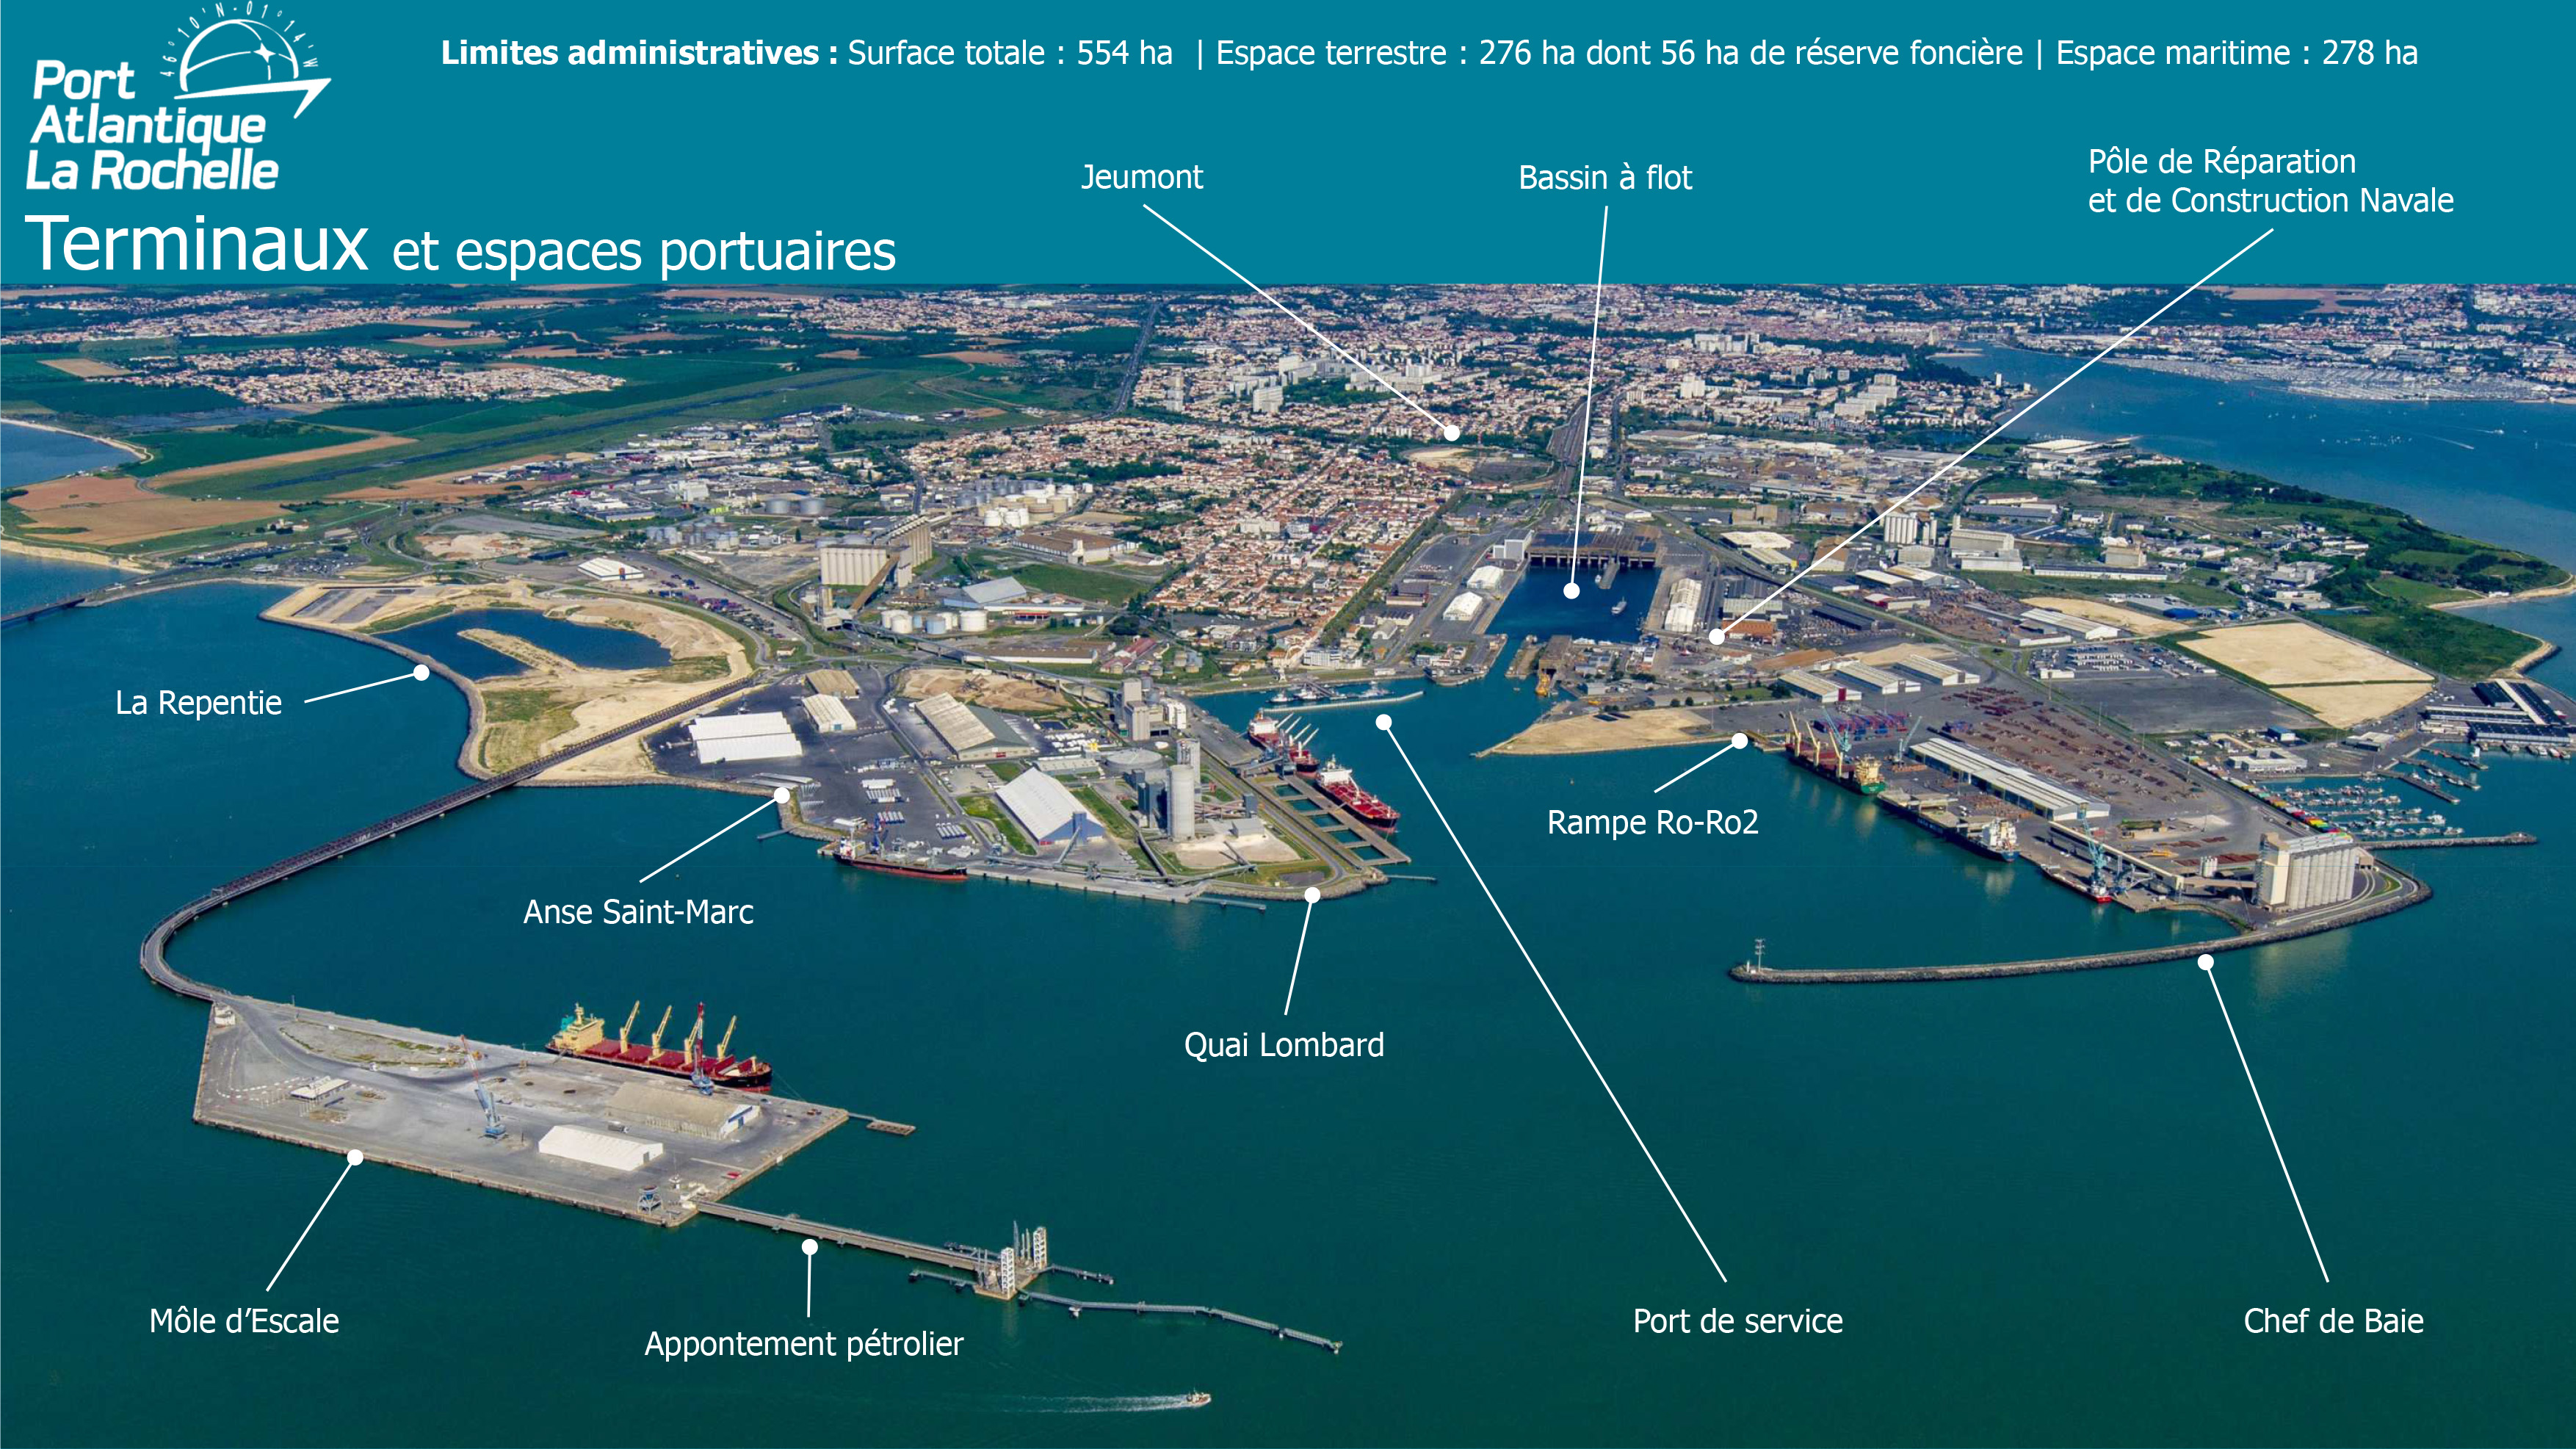 Terminaux et espaces portuaires